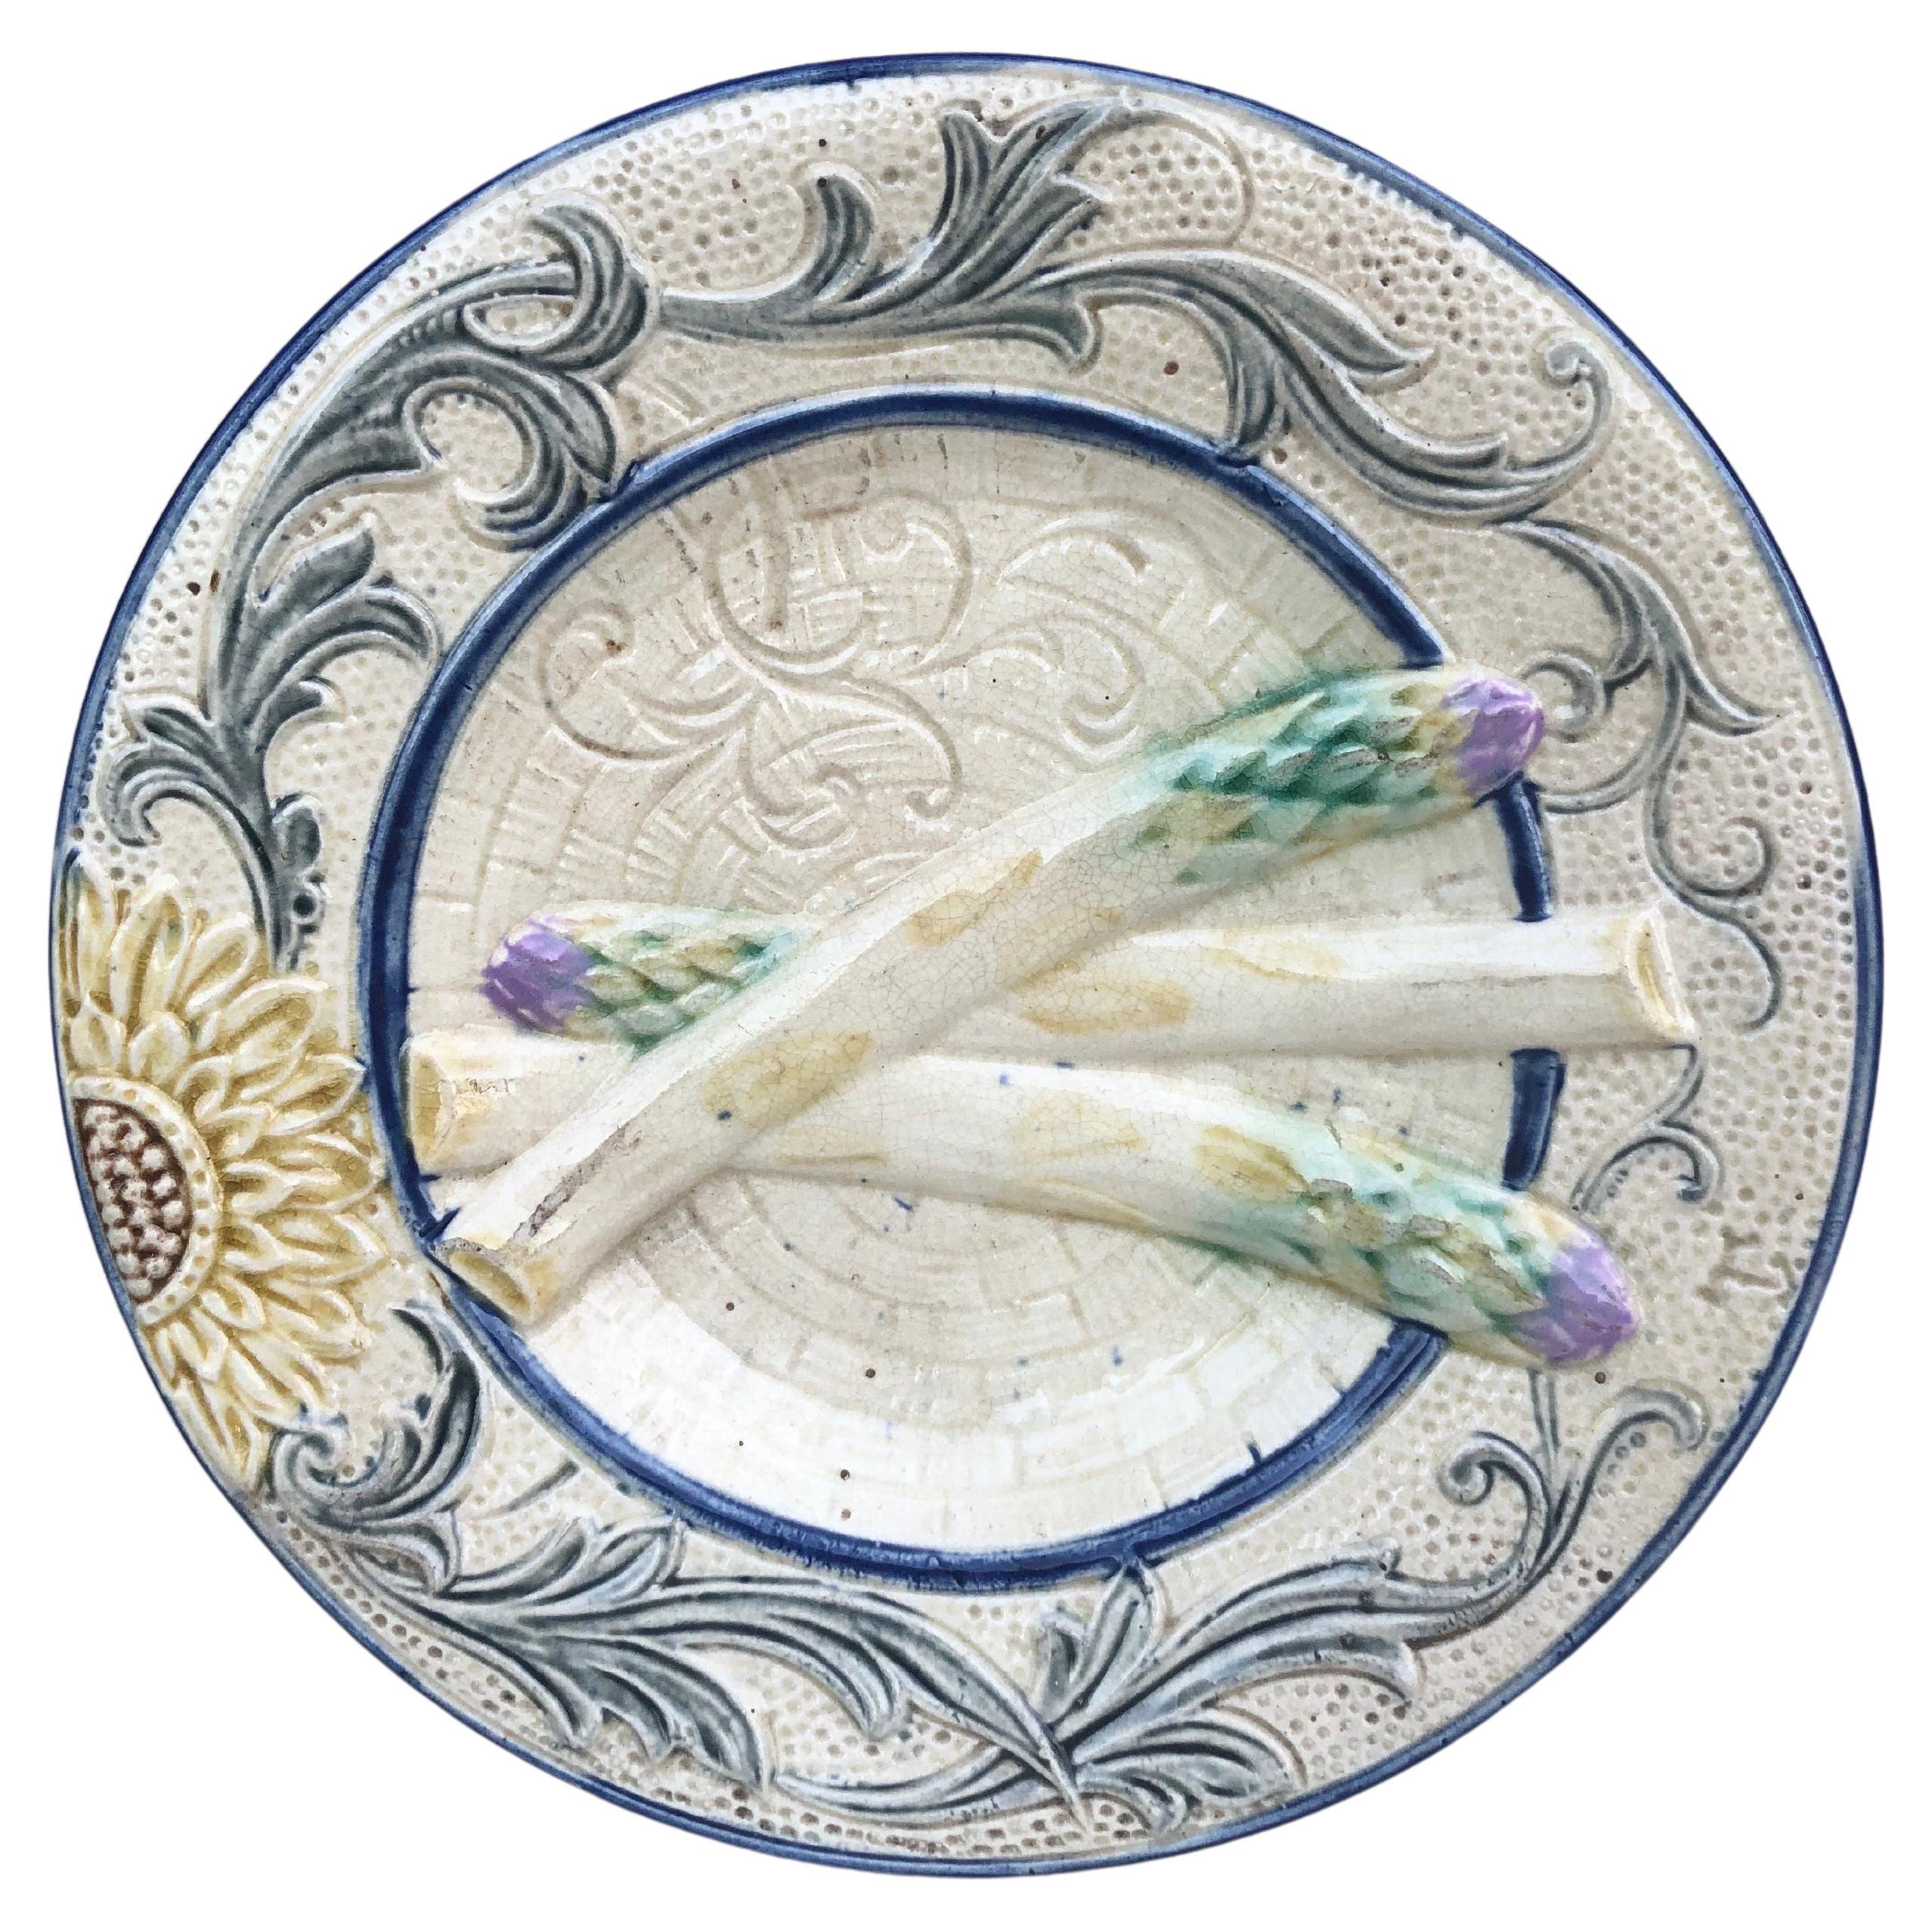 Rare assiette à asperges et tournesol en majolique de Belgique Wasmuel, vers 1880